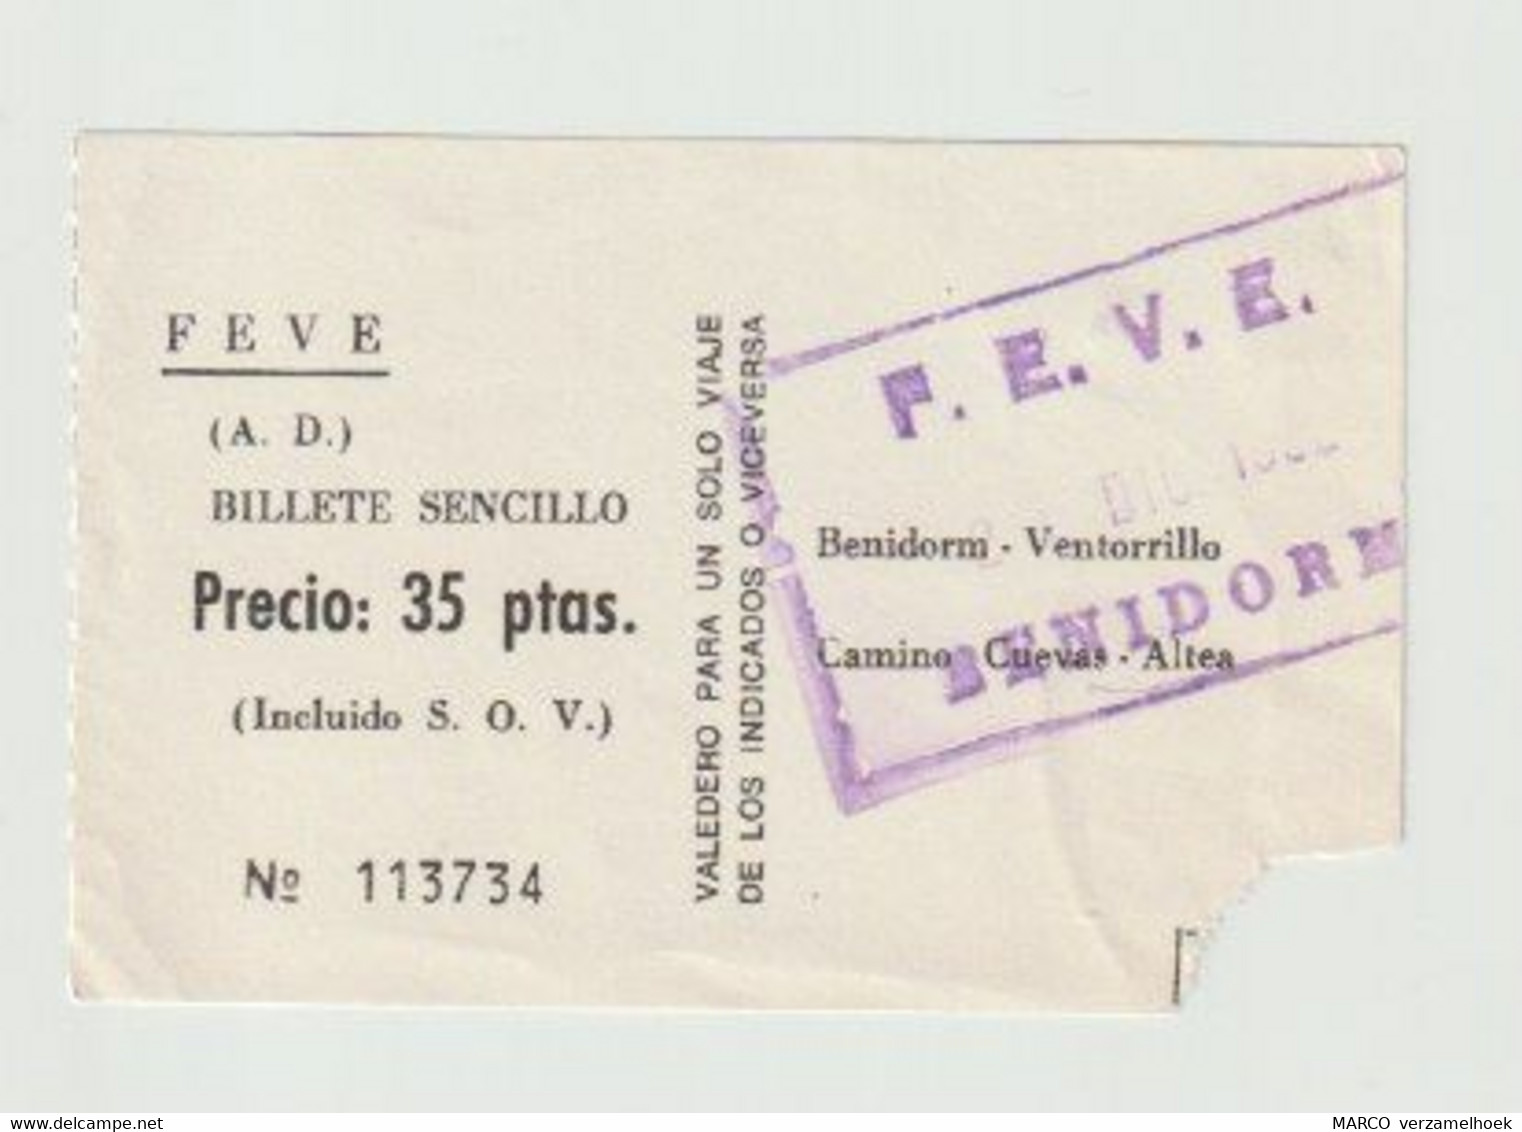 Carte D'entrée-toegangskaart-ticket: metro-bus Bilette Sencillo Benidorm-ventorillo-camino Cuevas-altea (E) - Europa